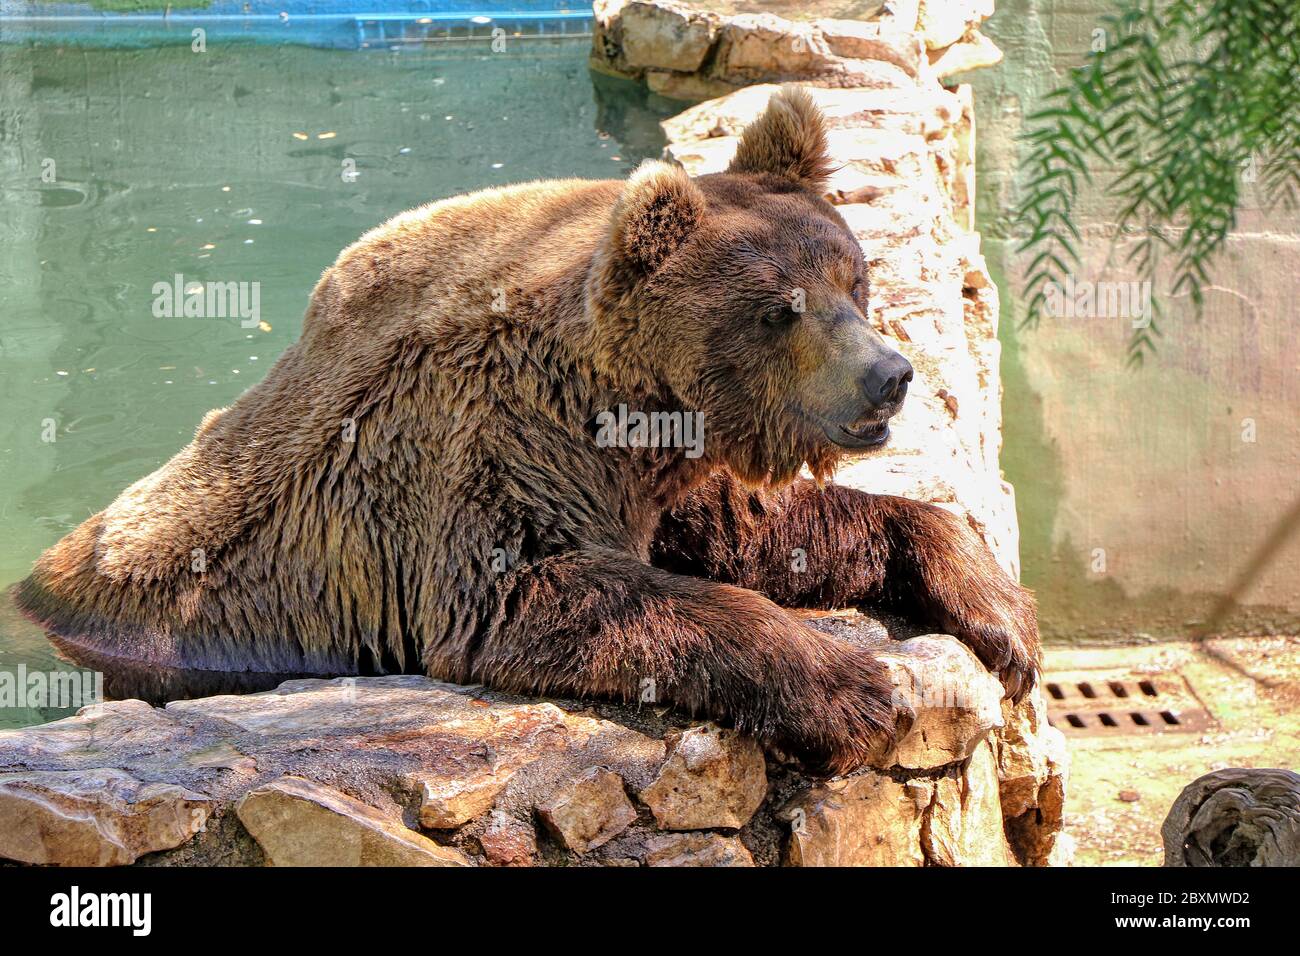 Braunbär nimmt ein Bad in einer Badewanne in einem Zoo Stockfoto